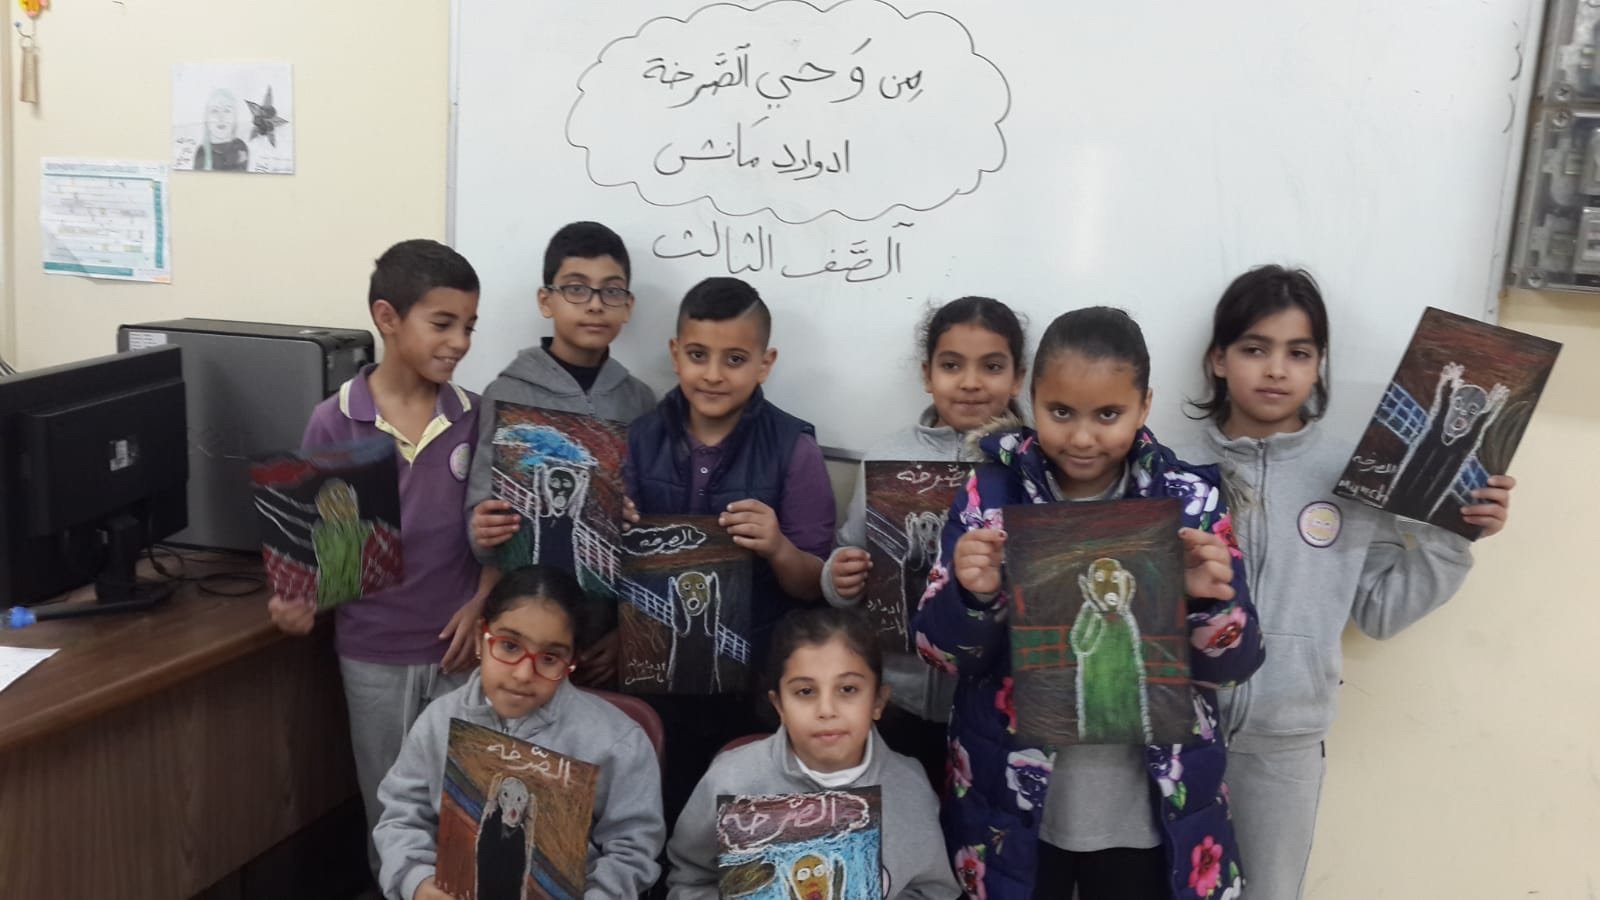 مدرسة "القسطل" الابتدائية في الناصرة تنبذ العنف وتشجع الحوار-10